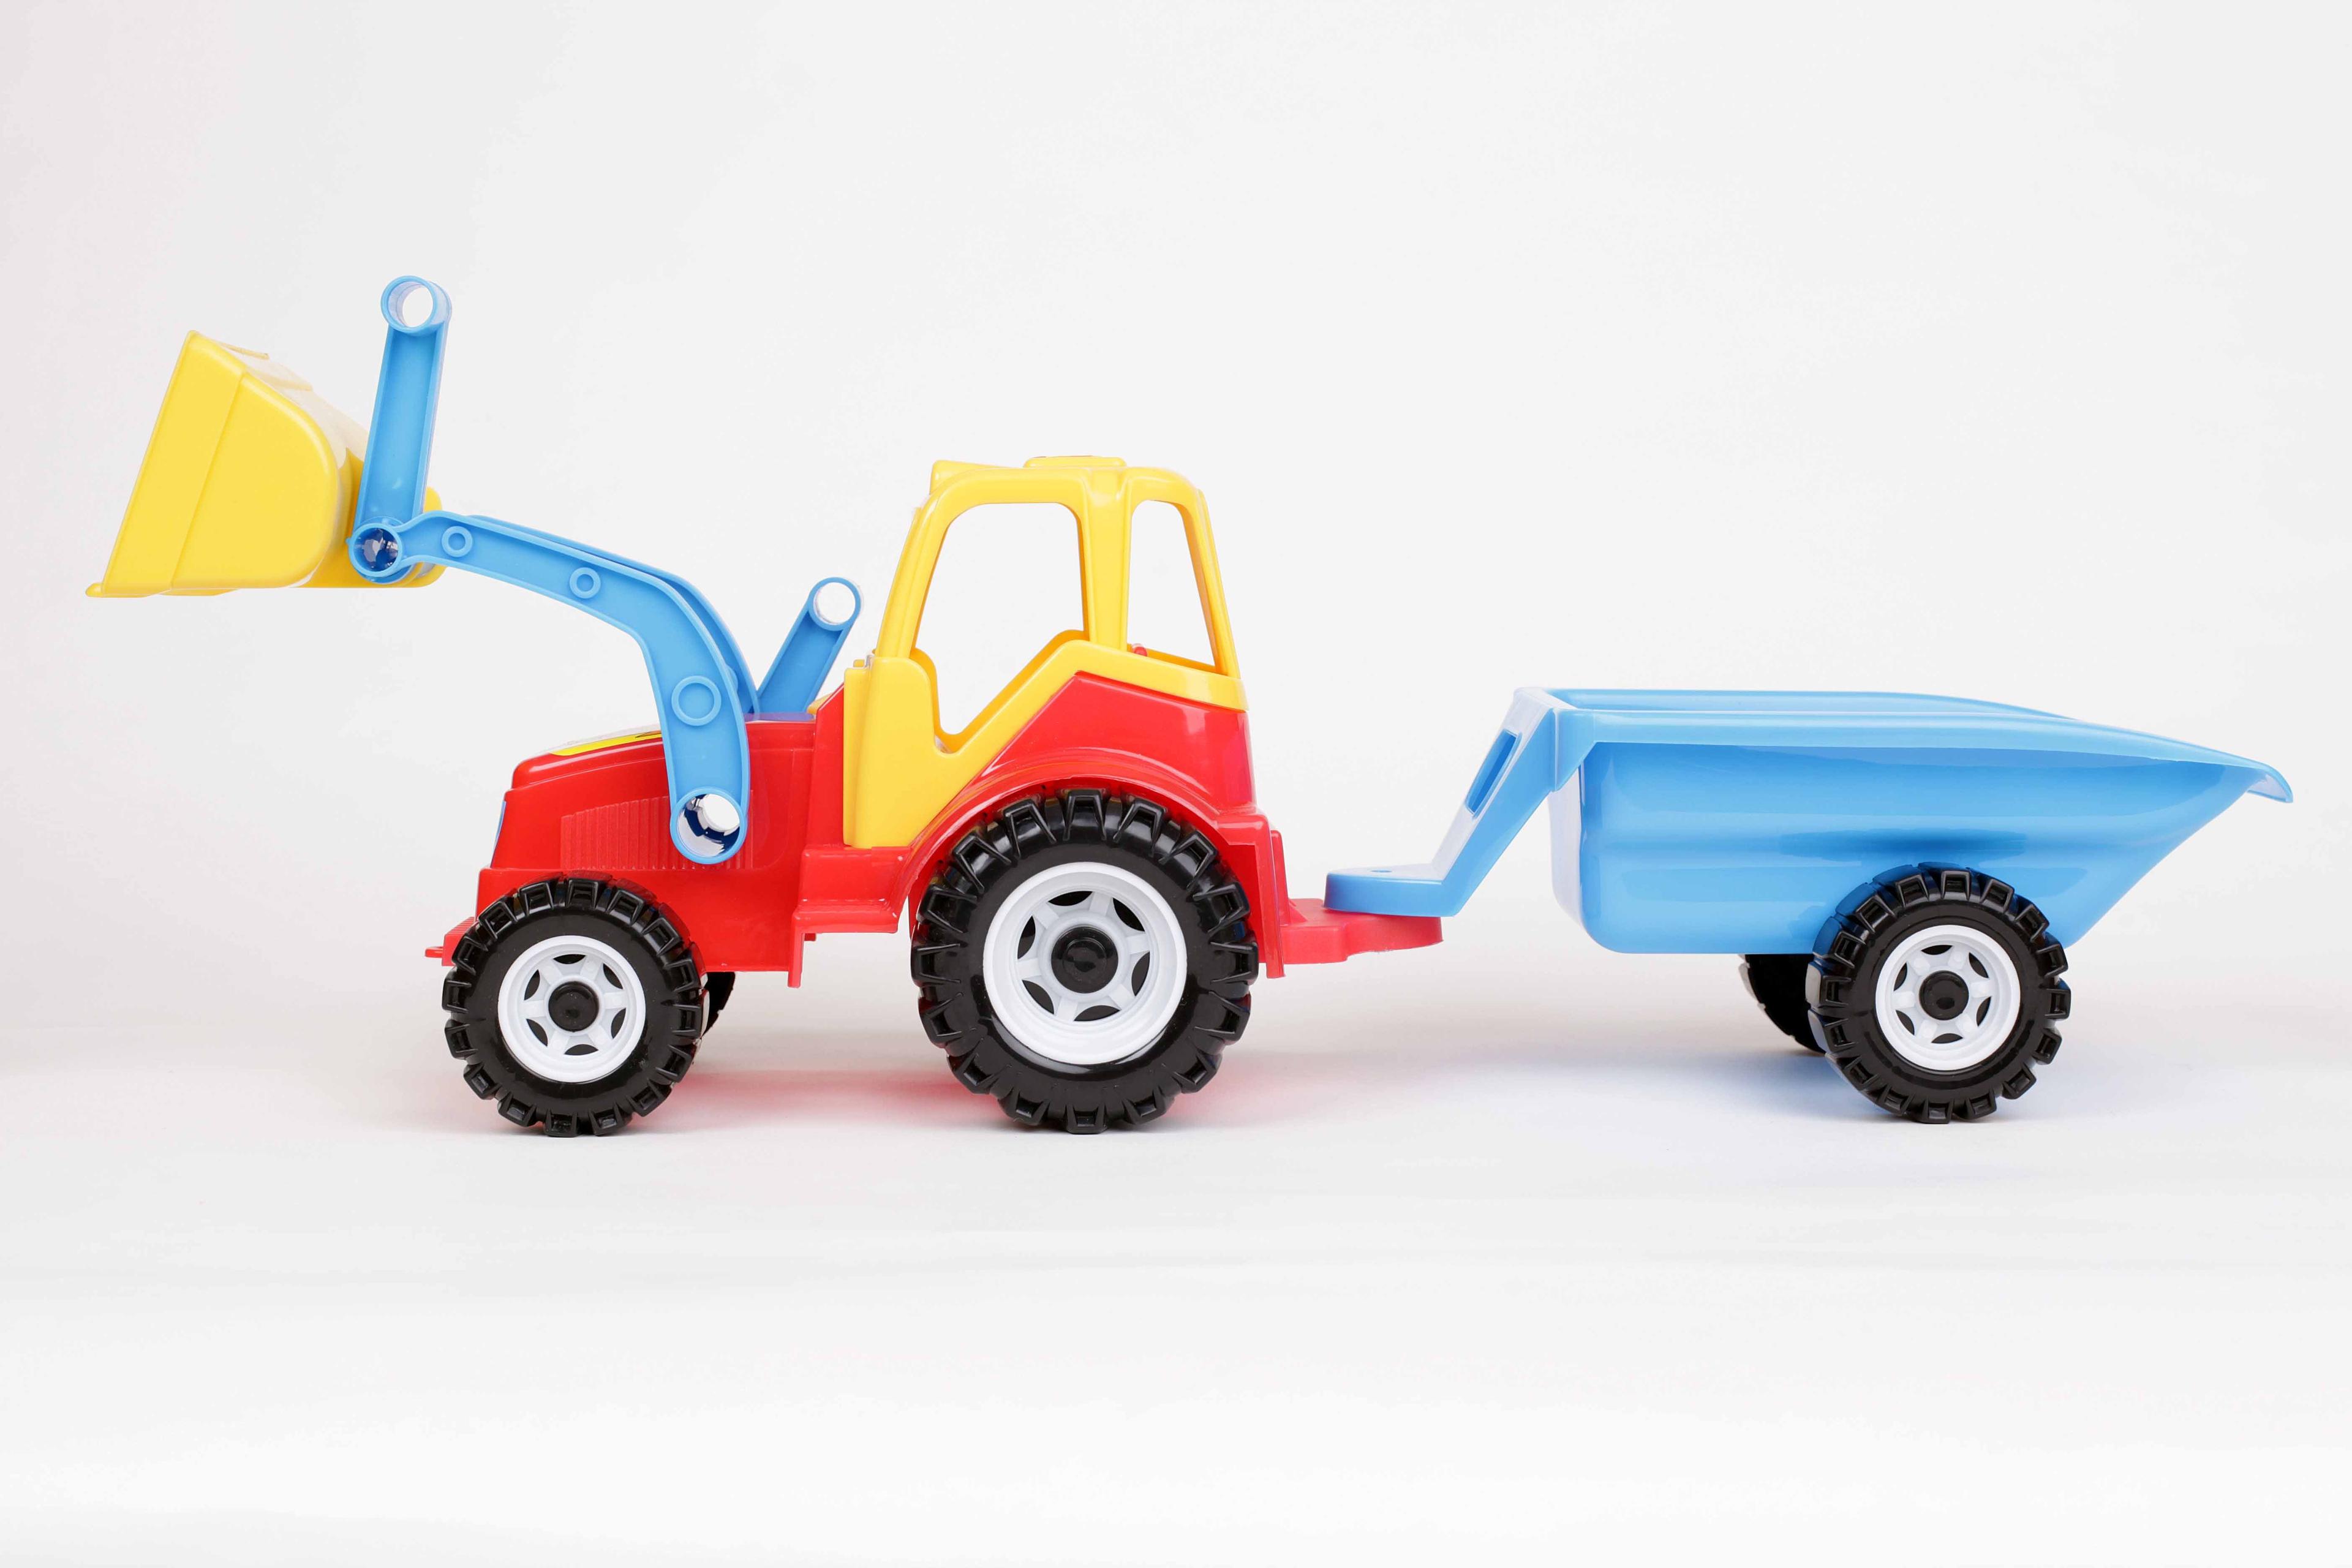 Traktor z ładowarką i przyczepą – model 091